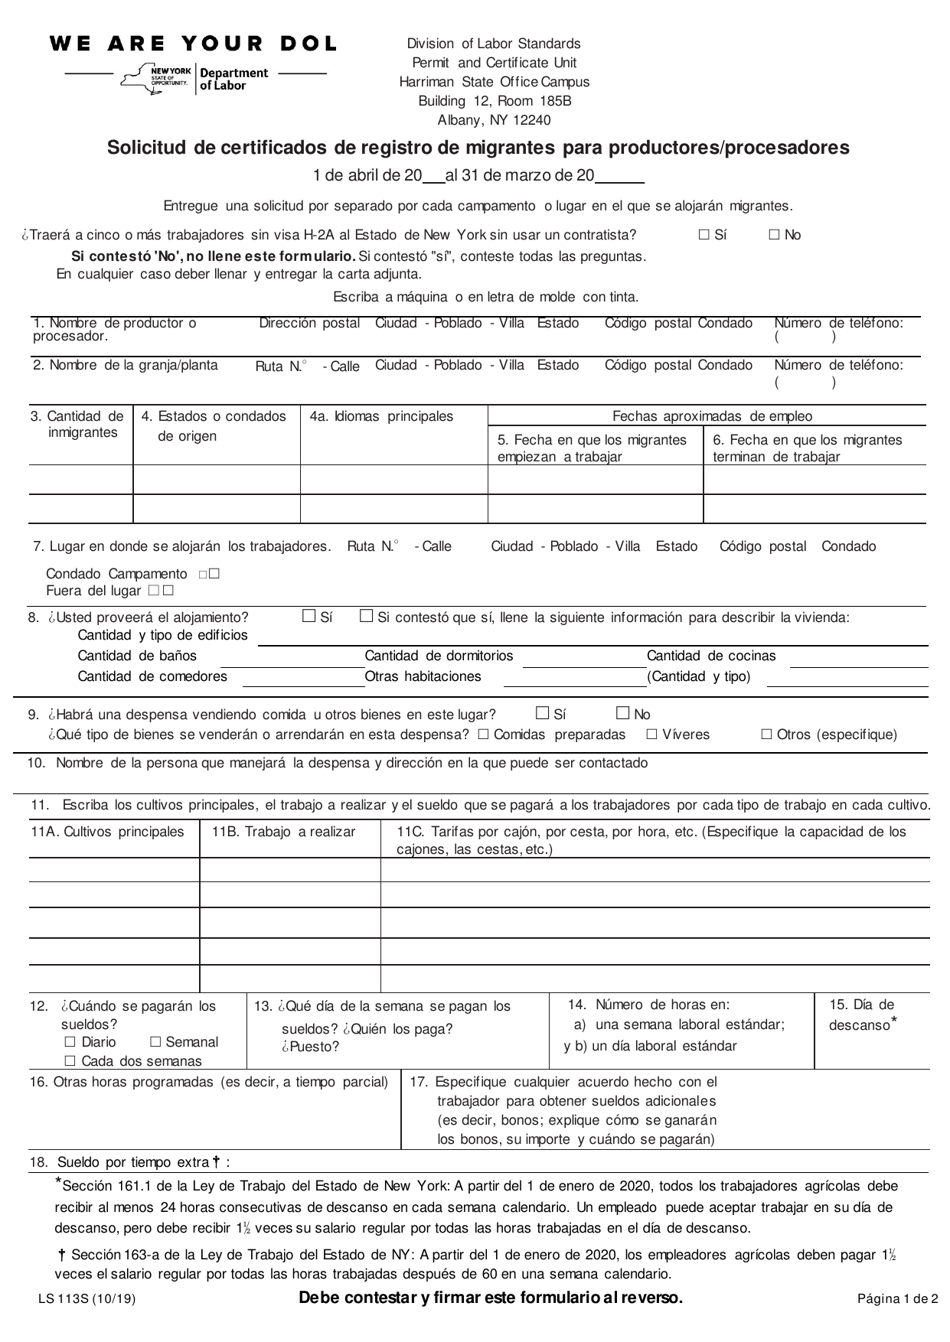 Formulario LS113S Solicitud De Certificados De Registro De Migrantes Para Productores / Procesadores - New York (Spanish), Page 1